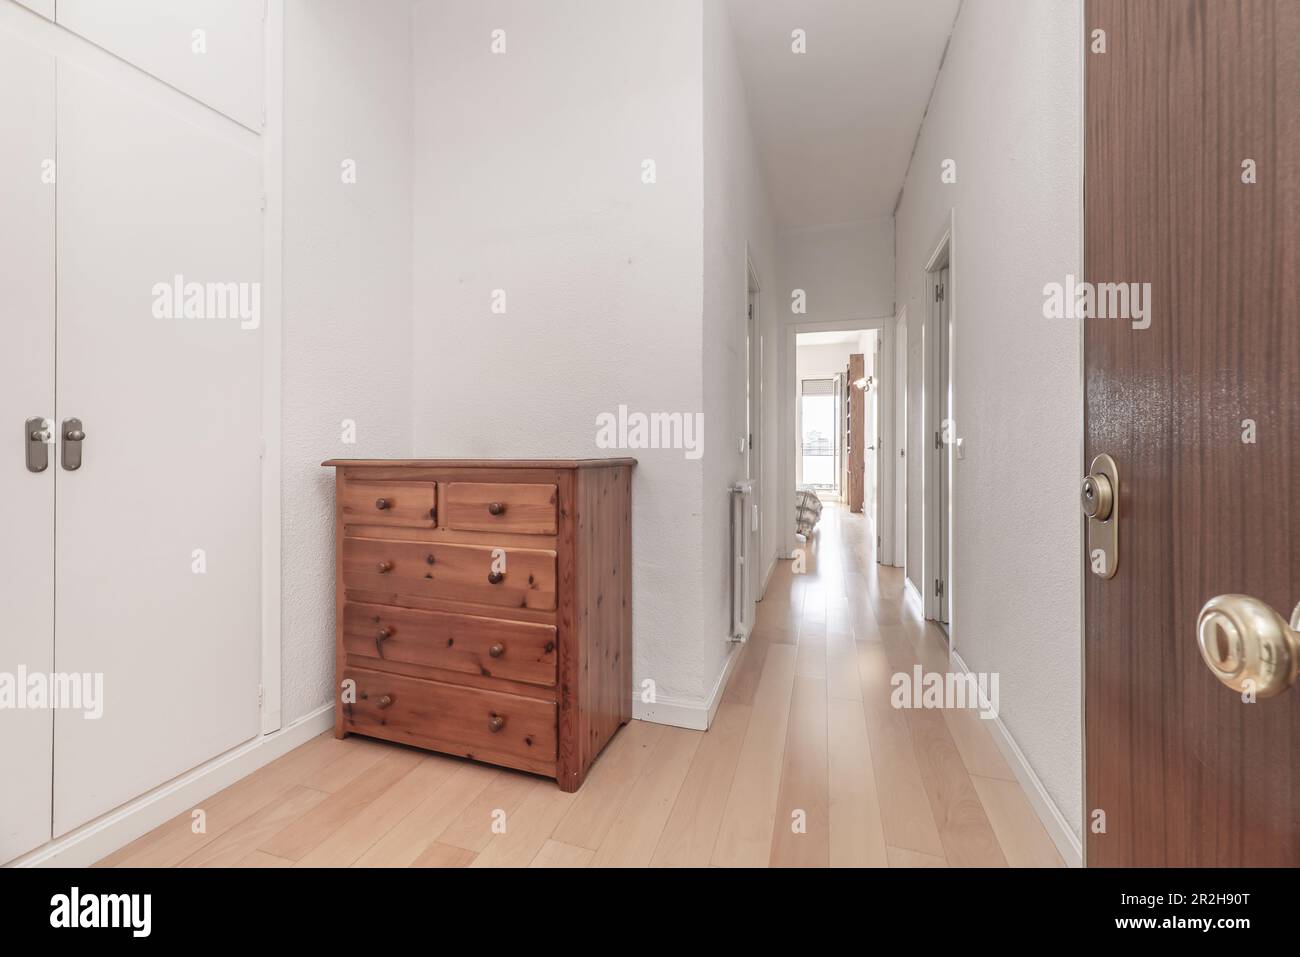 Hall d'entrée d'une maison avec placards blancs, un panneau latéral en pin de couleur miel et un long couloir avec plusieurs portes d'autres chambres Banque D'Images